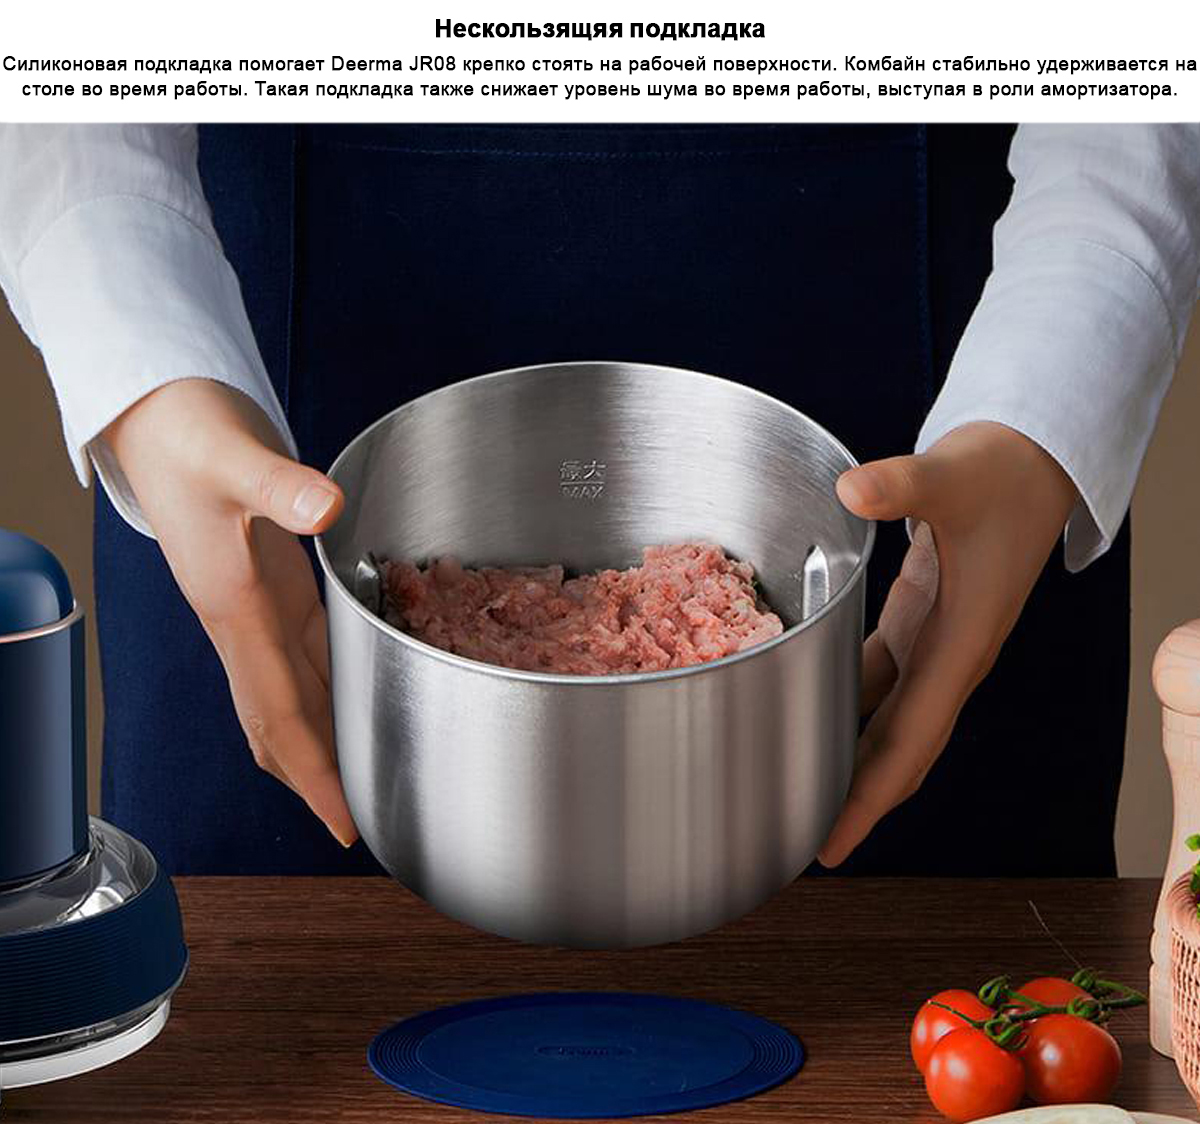 Беспроводной кухонный комбайн Deerma Food Processor DEM-JR08